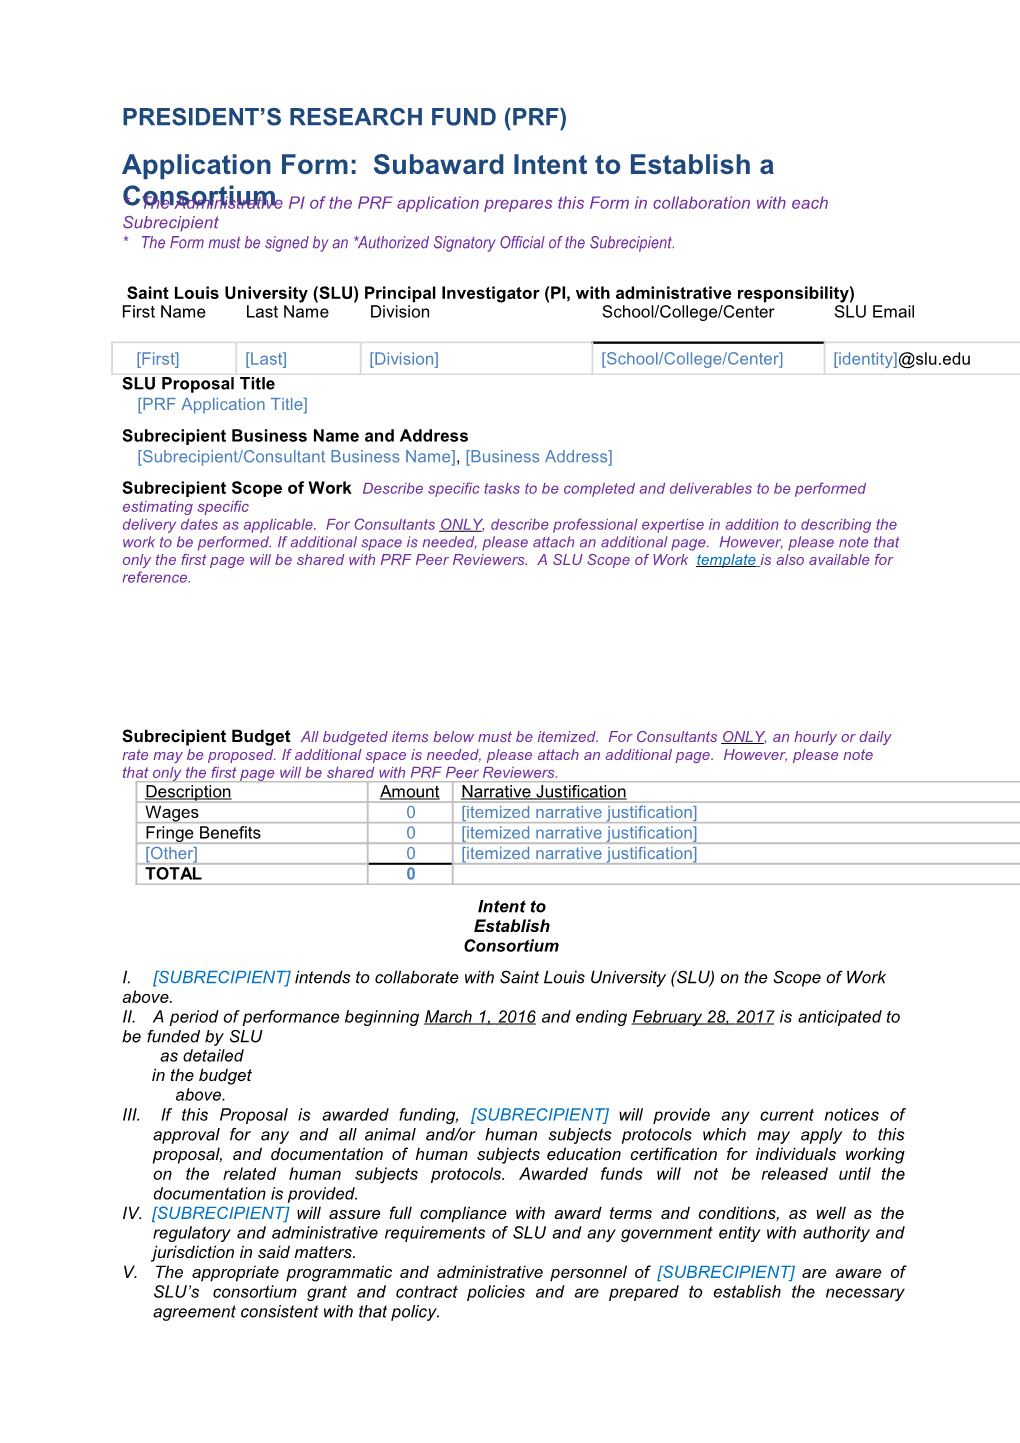 Application Form: Subaward Intent to Establish a Consortium